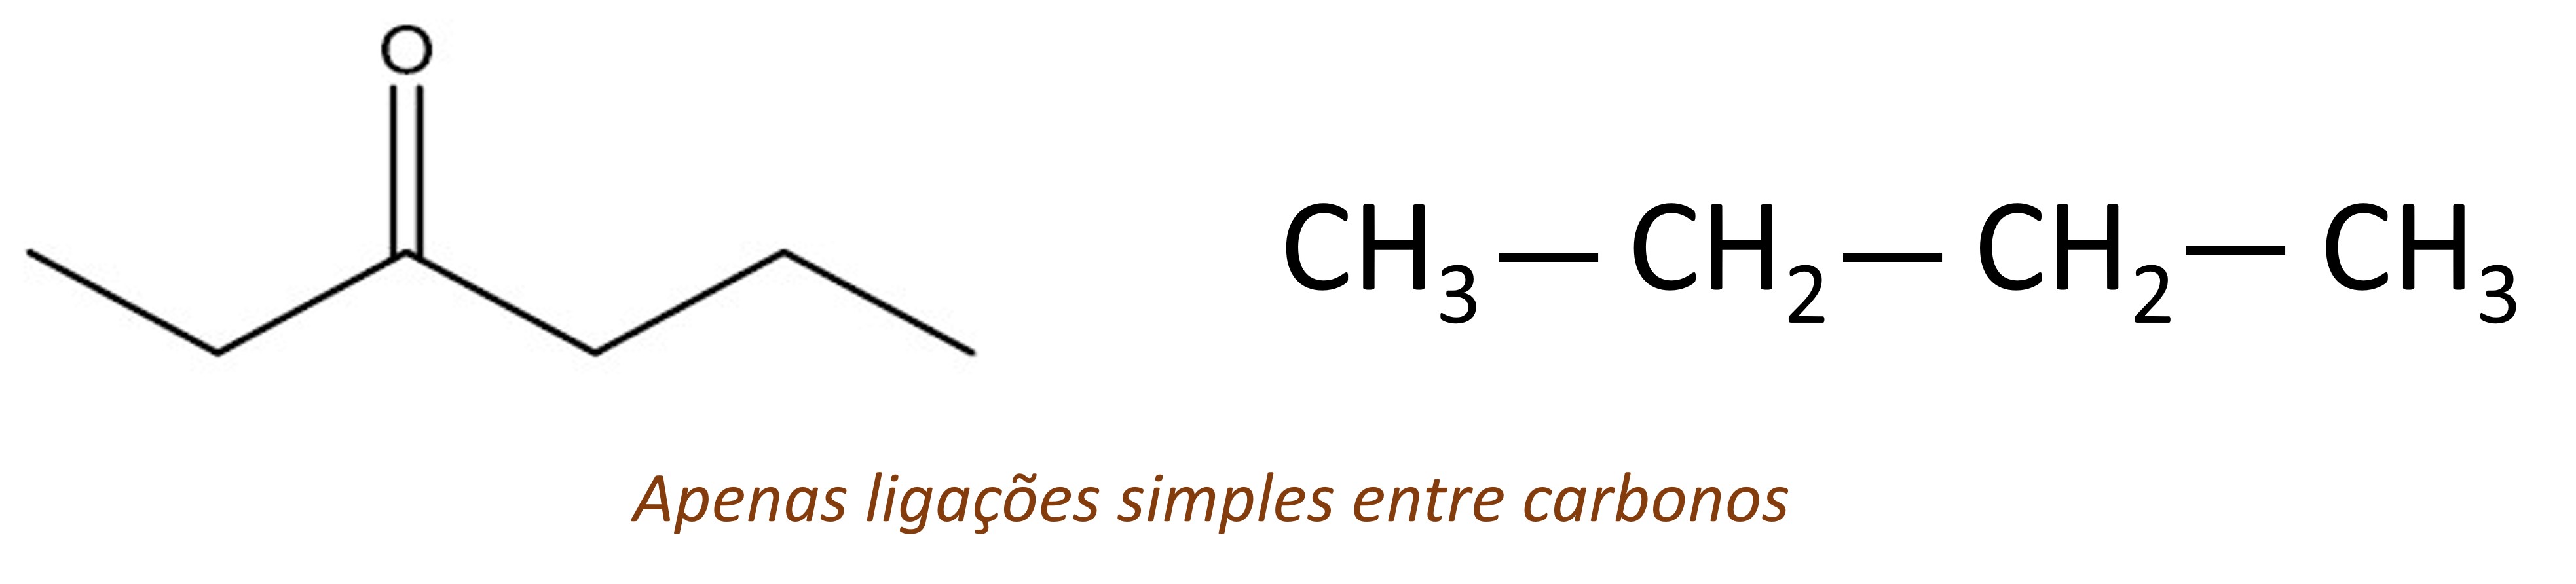 Cadeias carbônicas saturadas, que possuem apenas ligações simples entre carbonos.